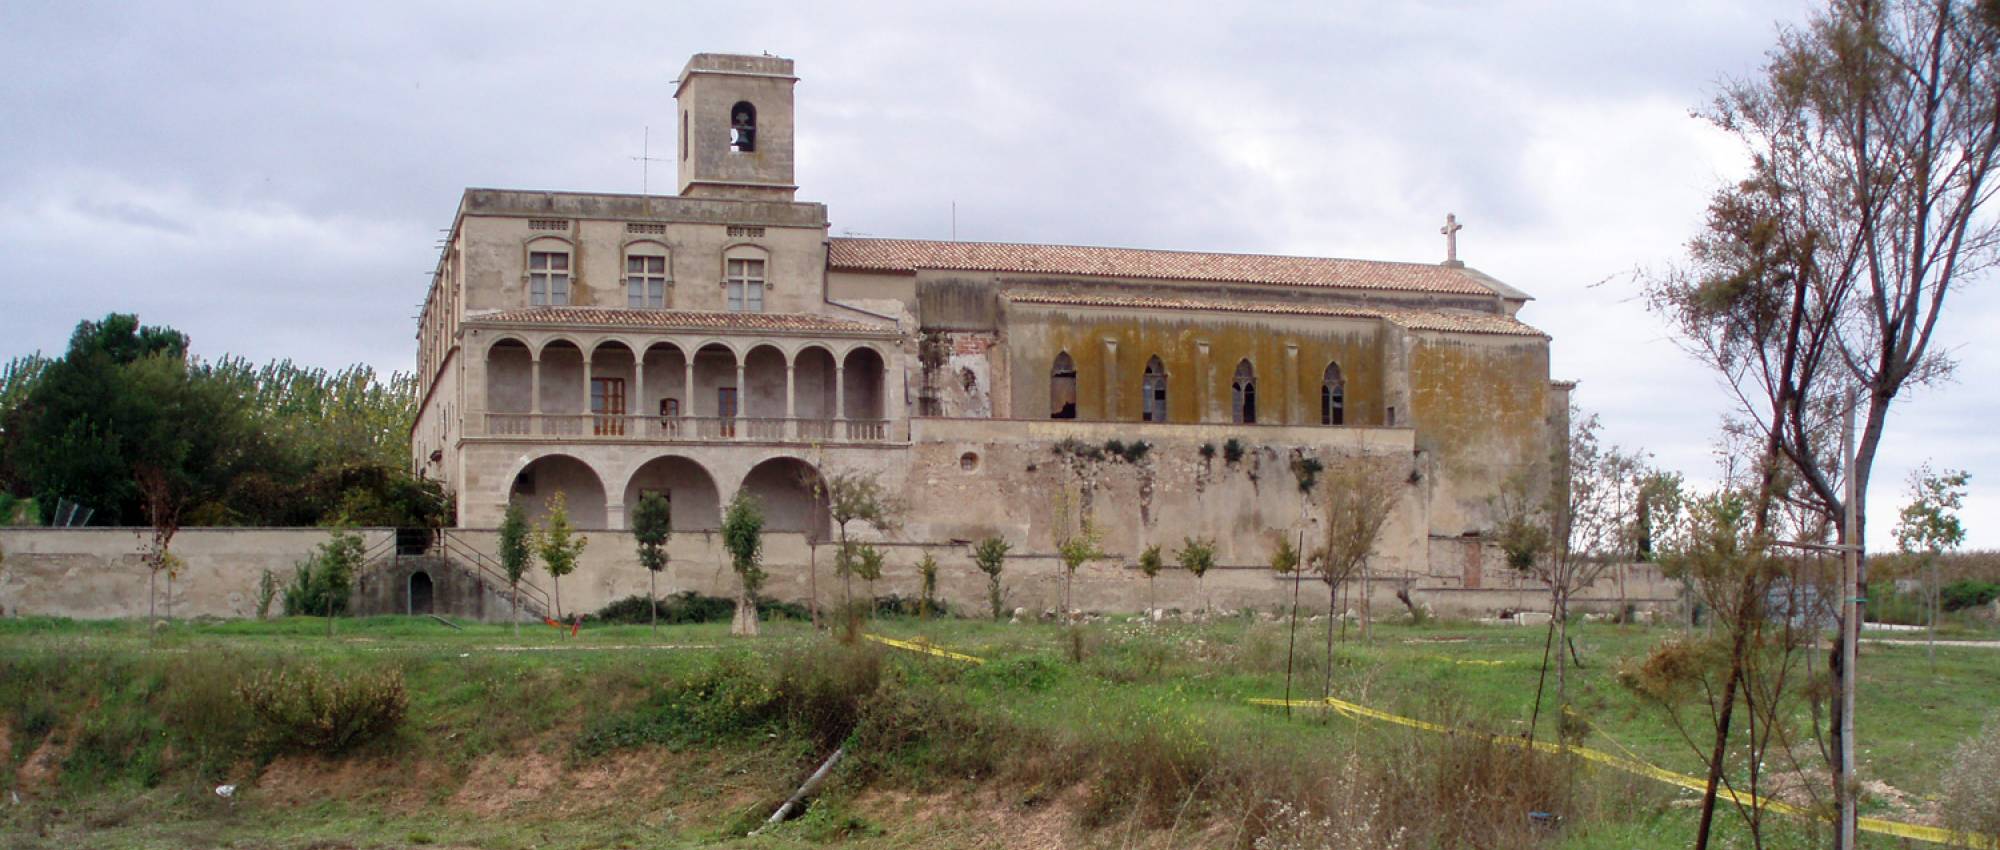 Vista general del convent de Sant Bartomeu. J.Gomà / Wikimedia Commons. CC BY 3.0